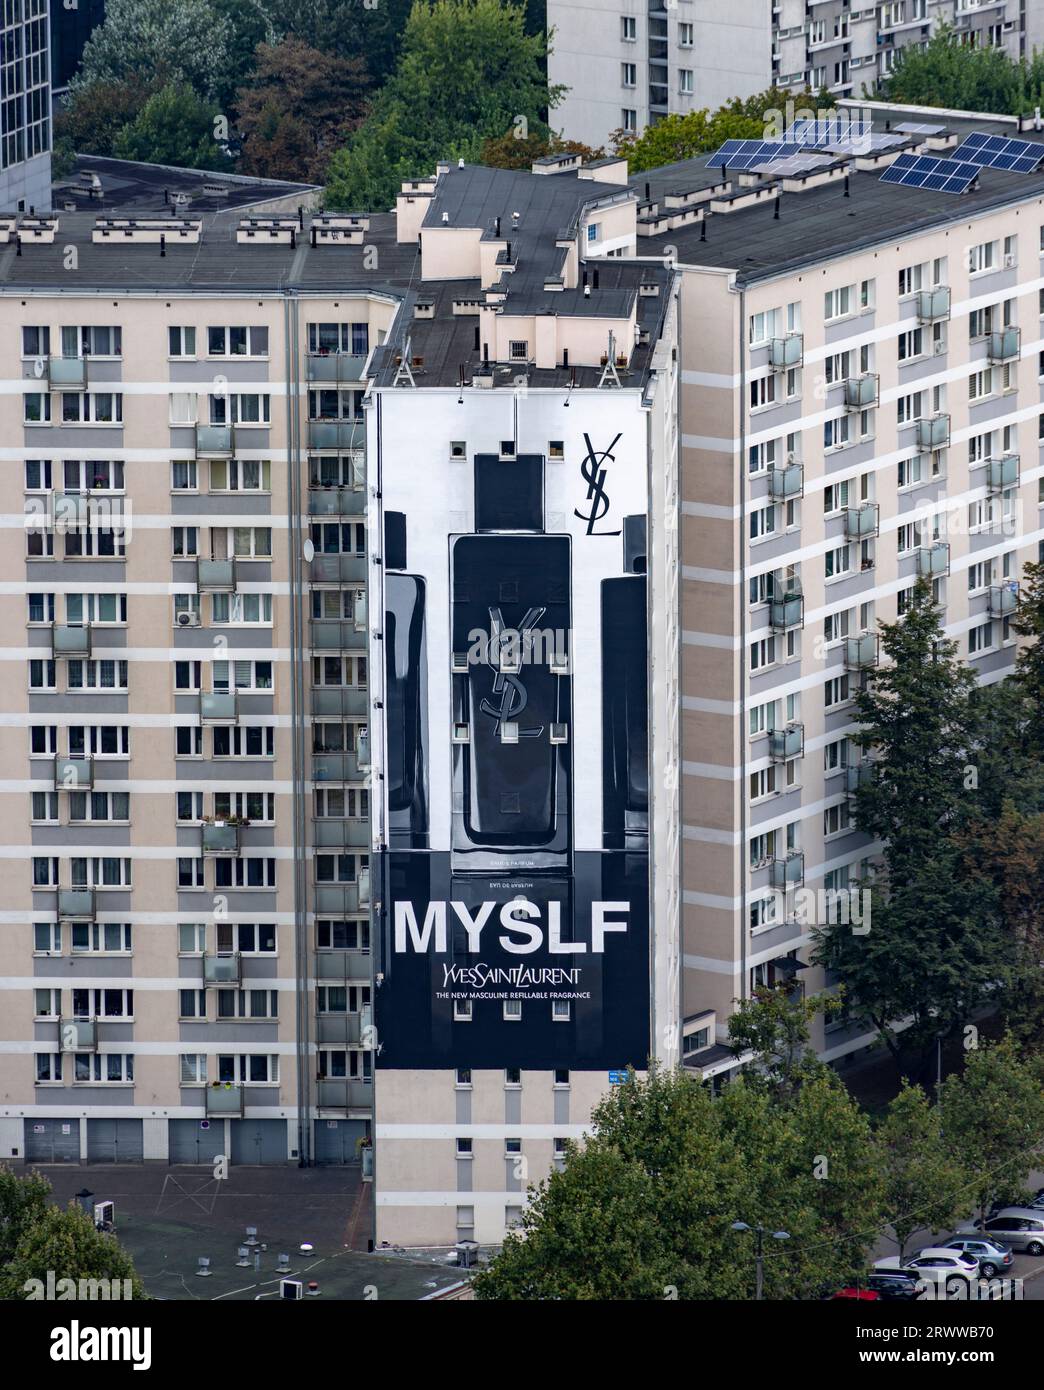 Énorme panneau publicitaire MYSLF, parfum pour homme par Yves Saint Laurent, Varsovie, Pologne Banque D'Images